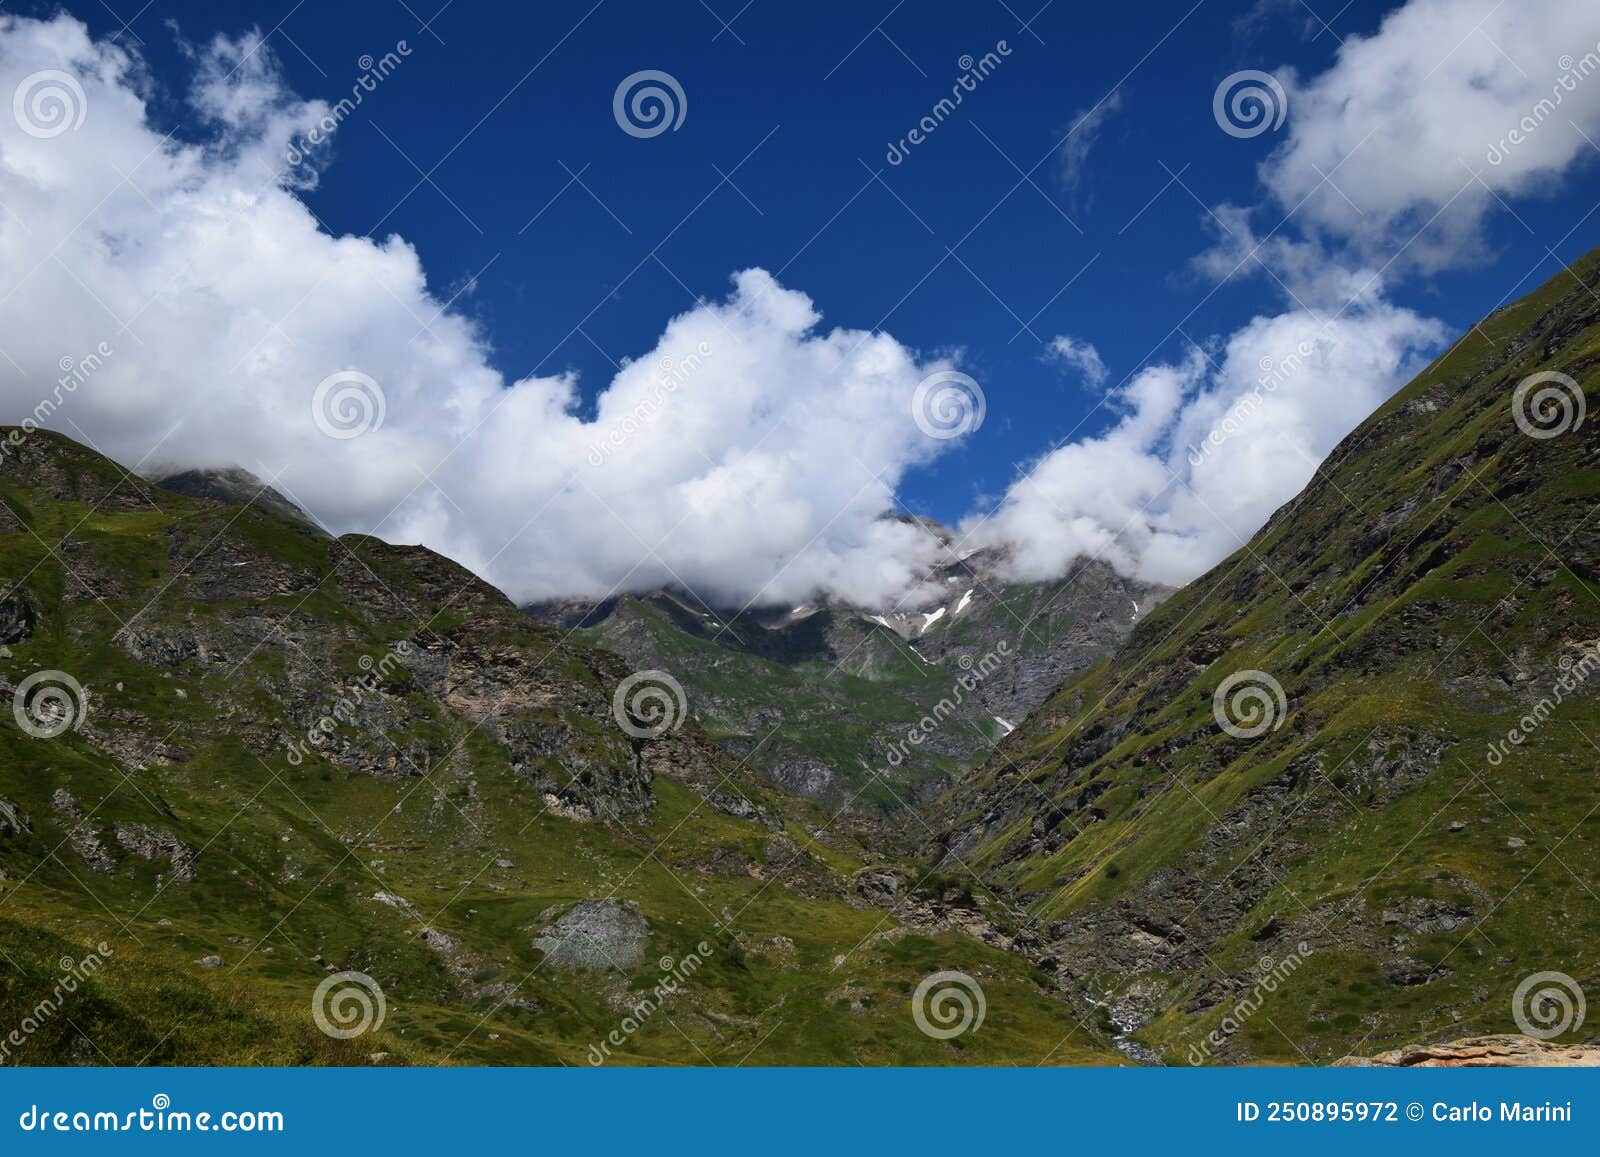 panorama delle alpi, montagna con cielo blu e nuvole bianche